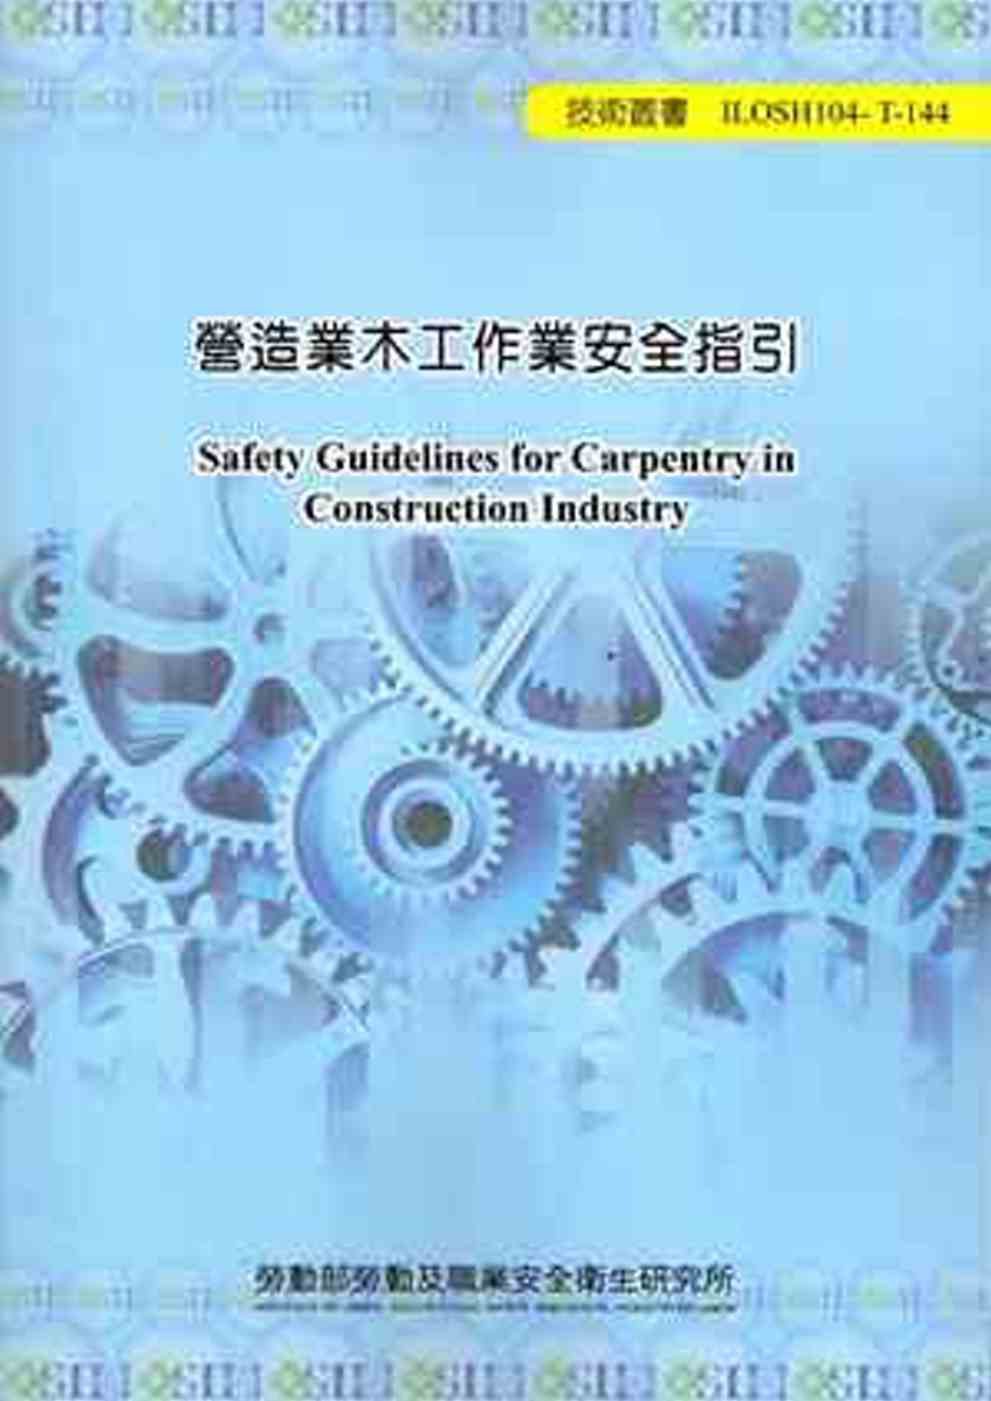 營造業木工作業安全指引104-T-144